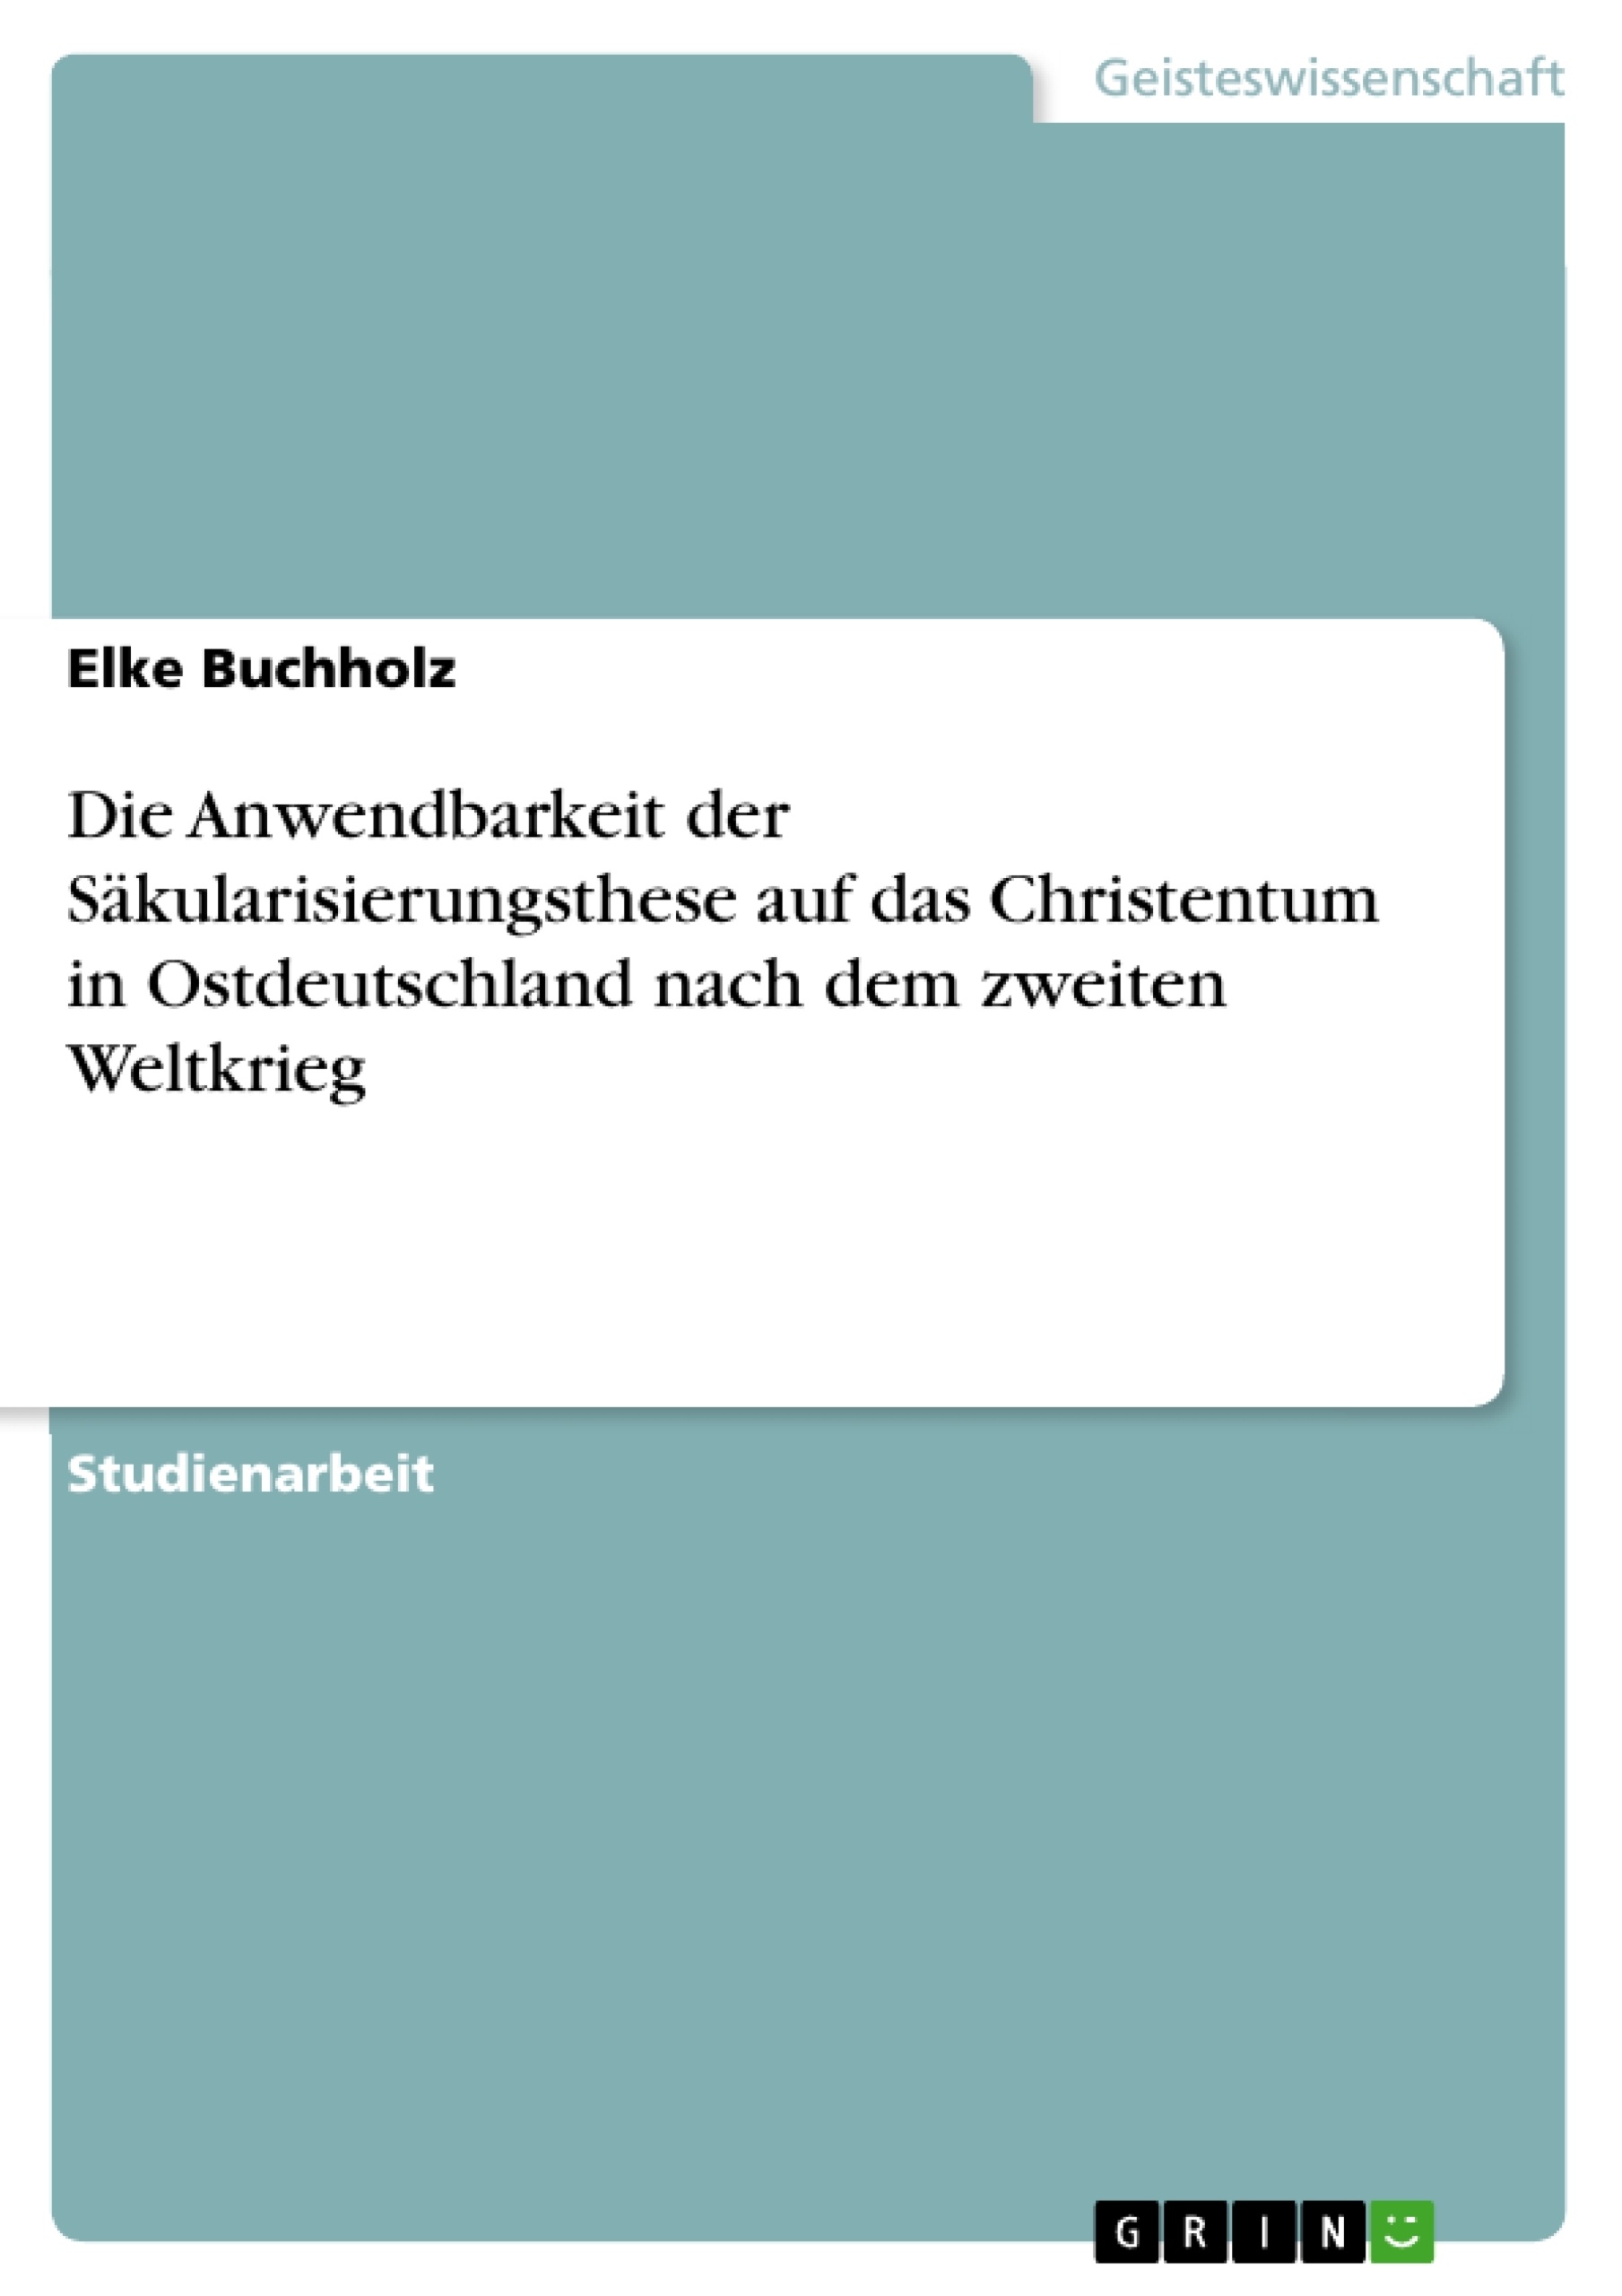 Titre: Die Anwendbarkeit der Säkularisierungsthese auf das Christentum in Ostdeutschland nach dem zweiten Weltkrieg